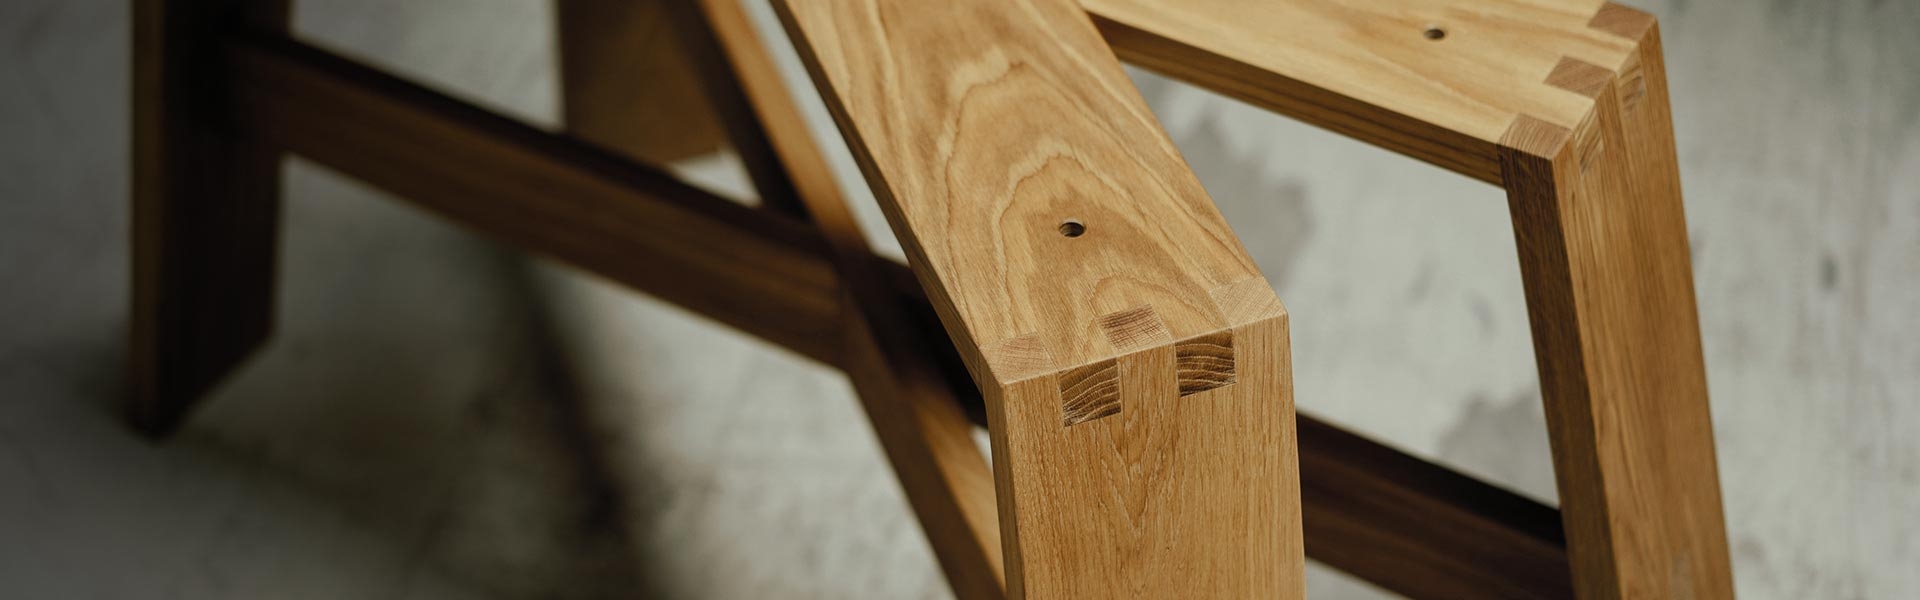 Tischgestelle aus Holz nach Deinen Maßen gefertigt